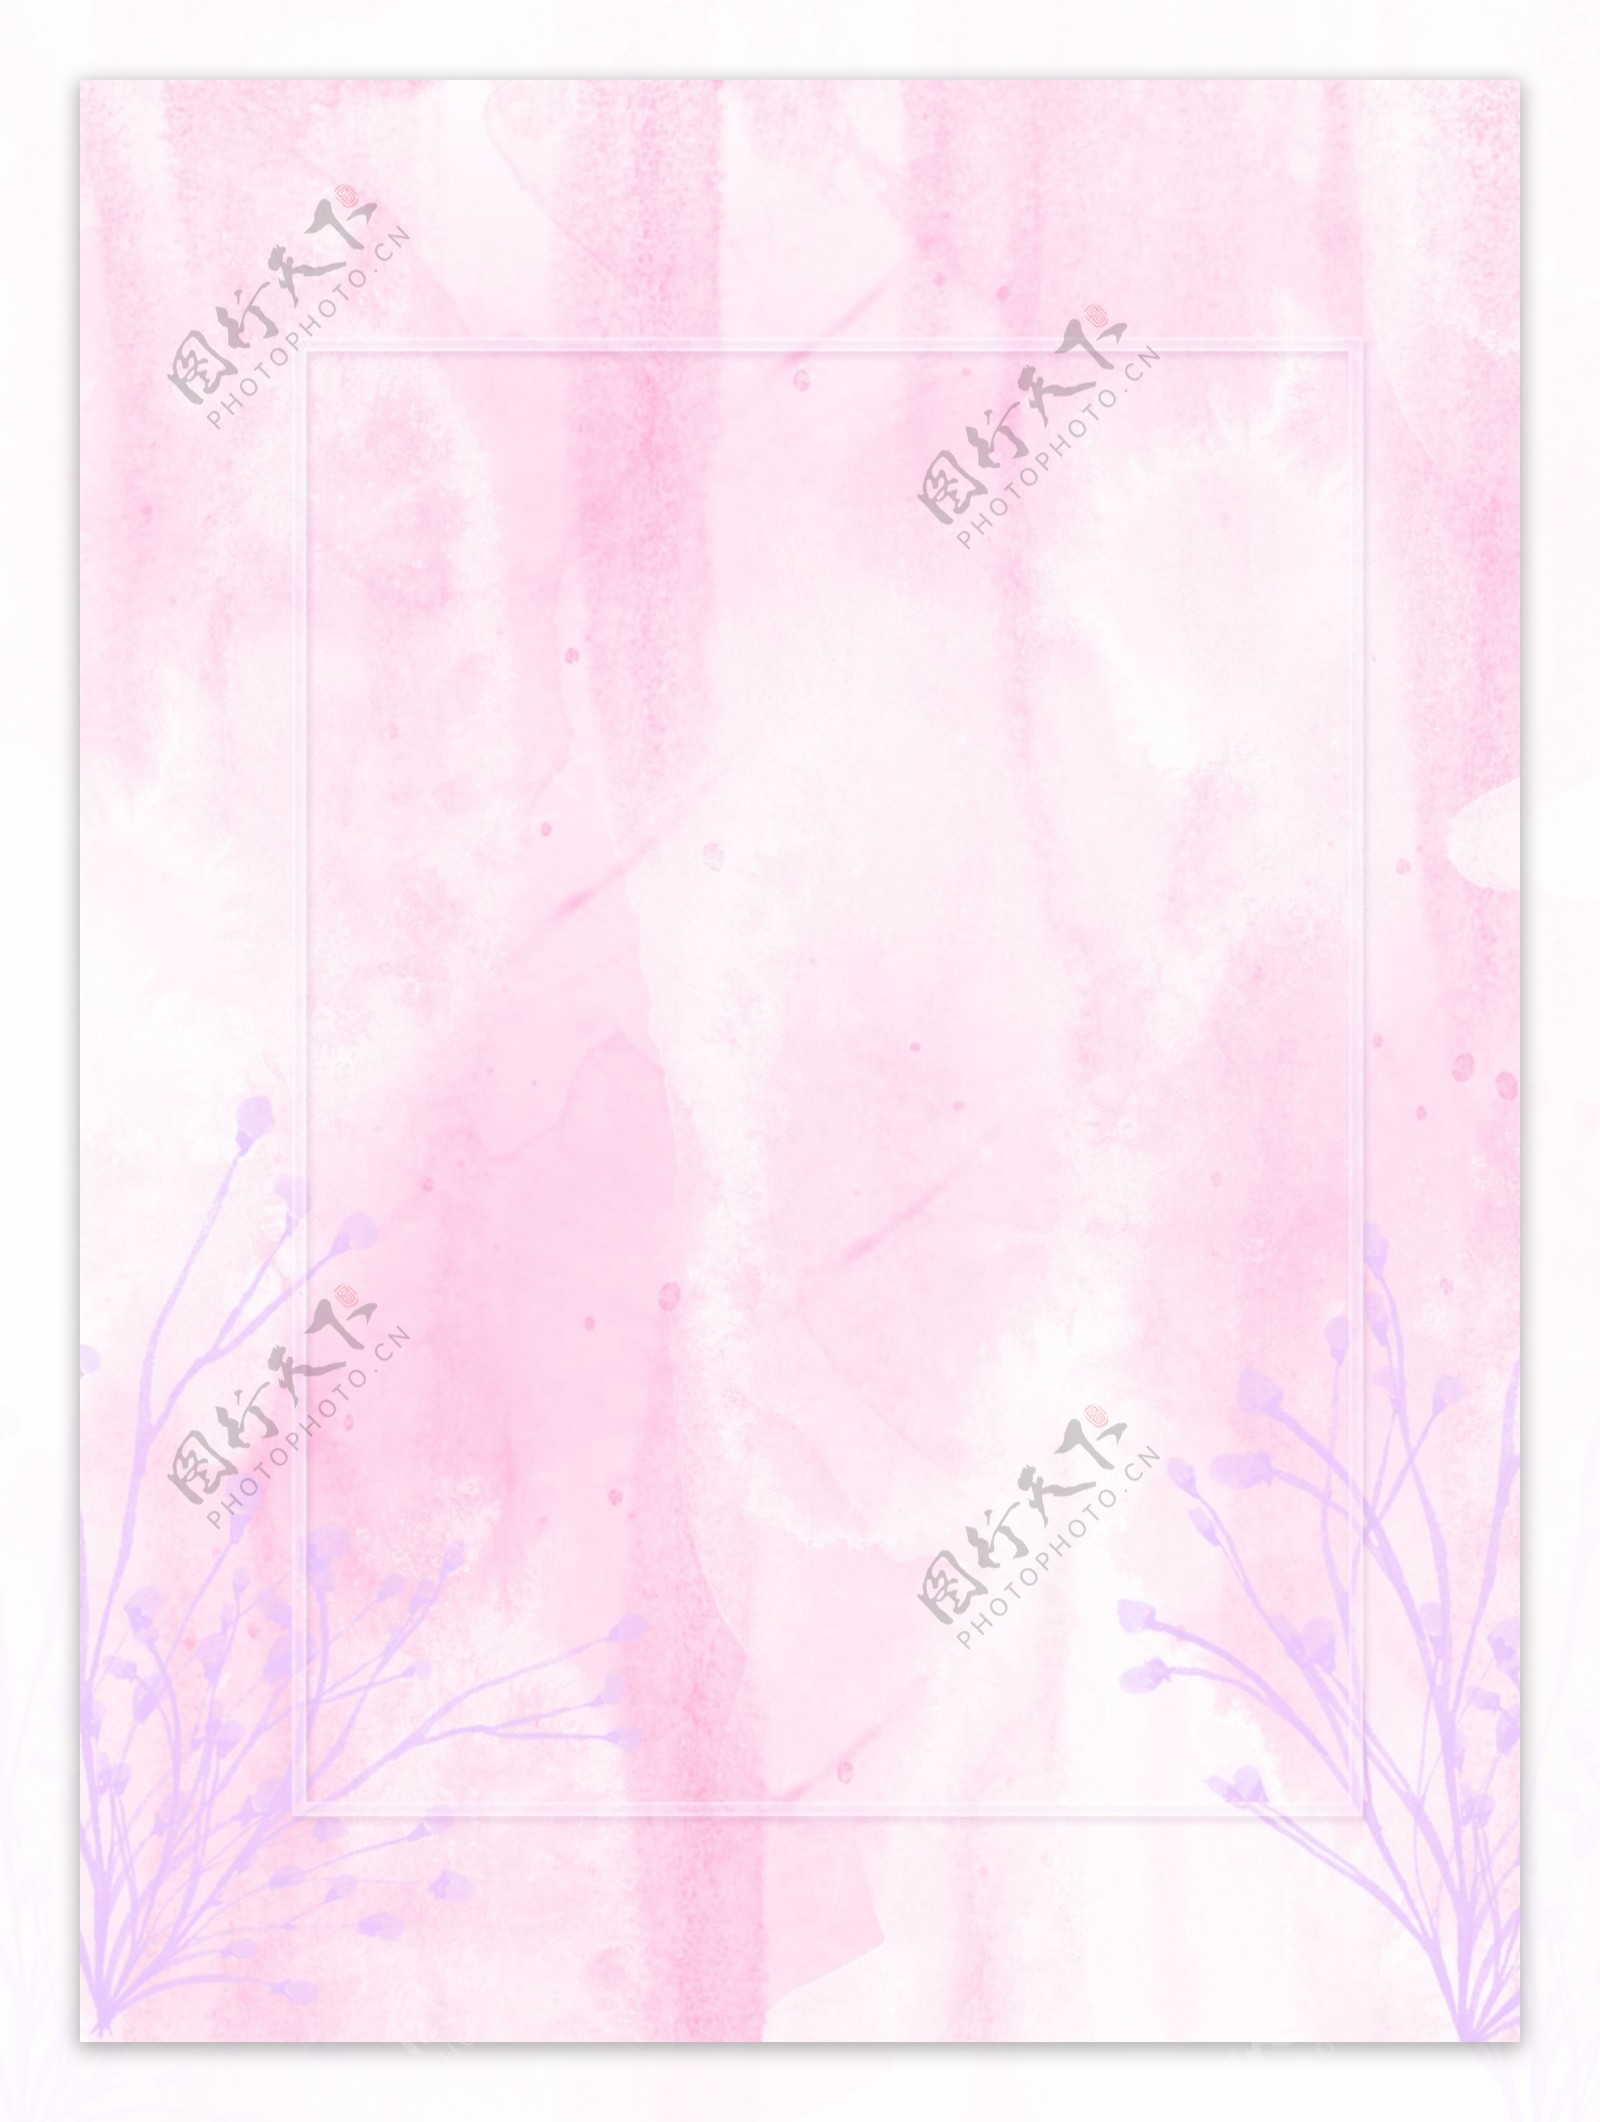 原创水彩质感粉紫方框水彩背景素材